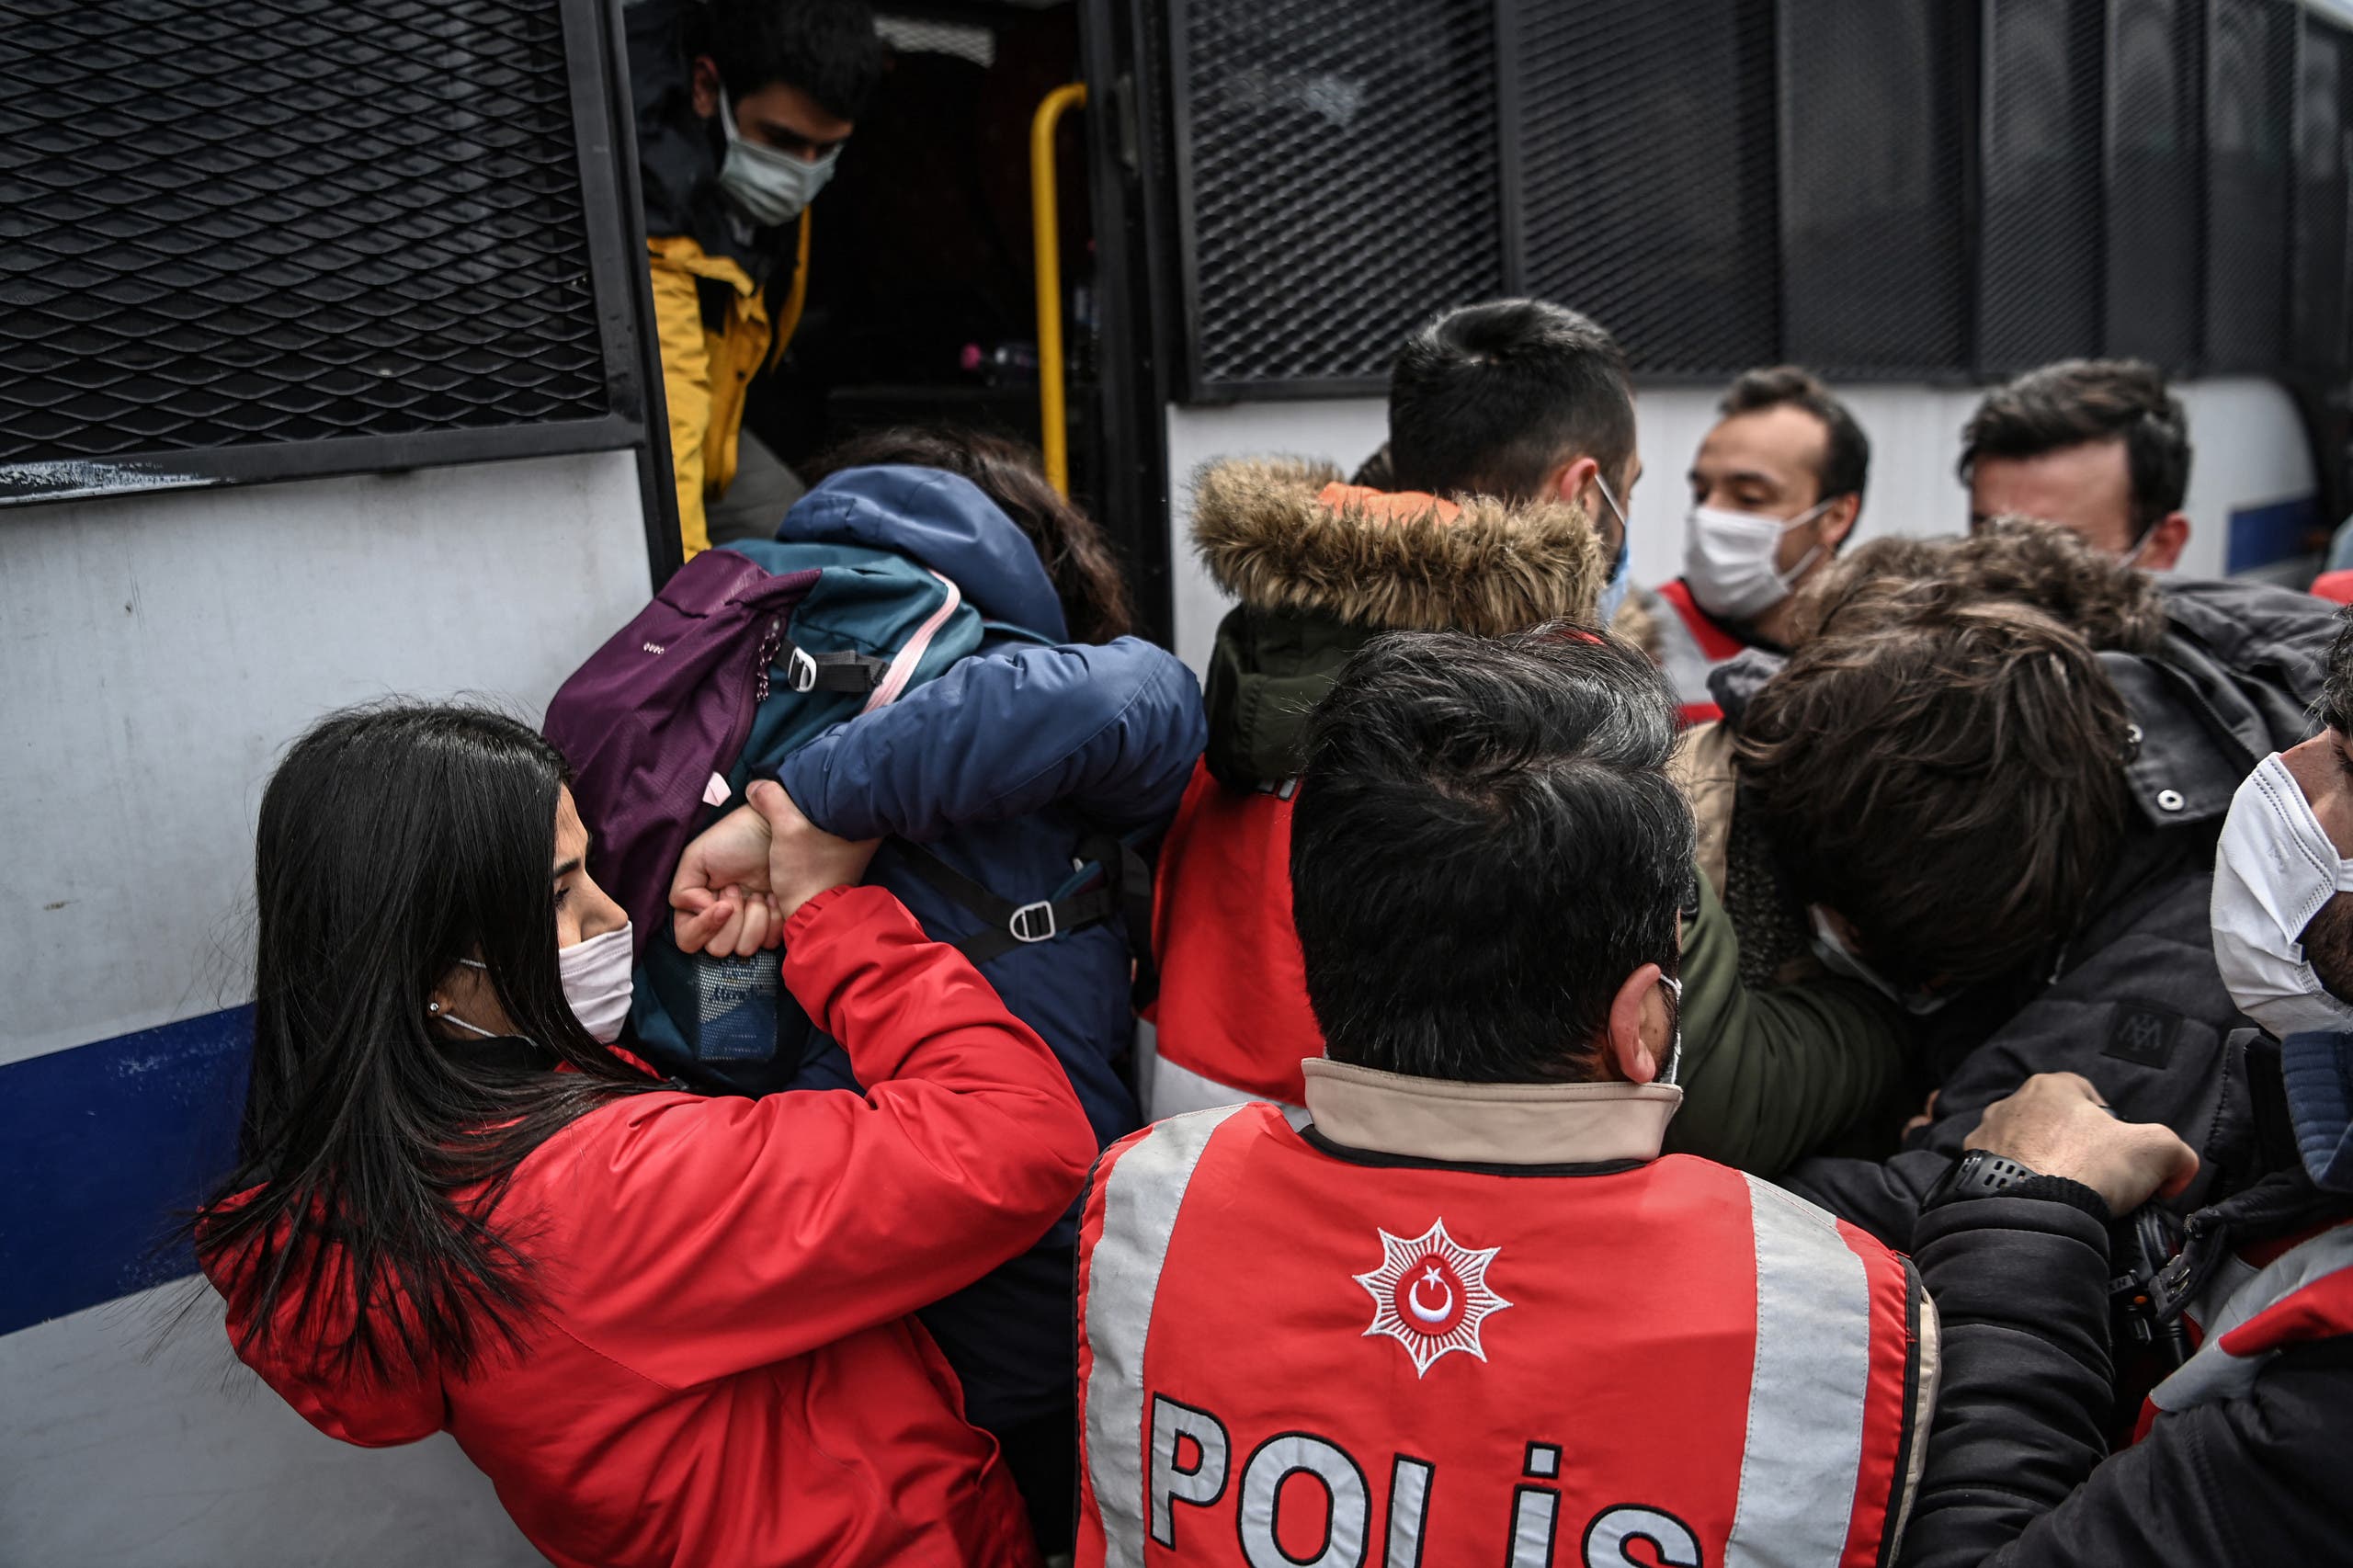 الأمن التركي يعتقل متظاهرين في إسطنبول في مارس الماضي خلال تظاهرة ضد تعيين عميد جامعة مقرب من أردوغان